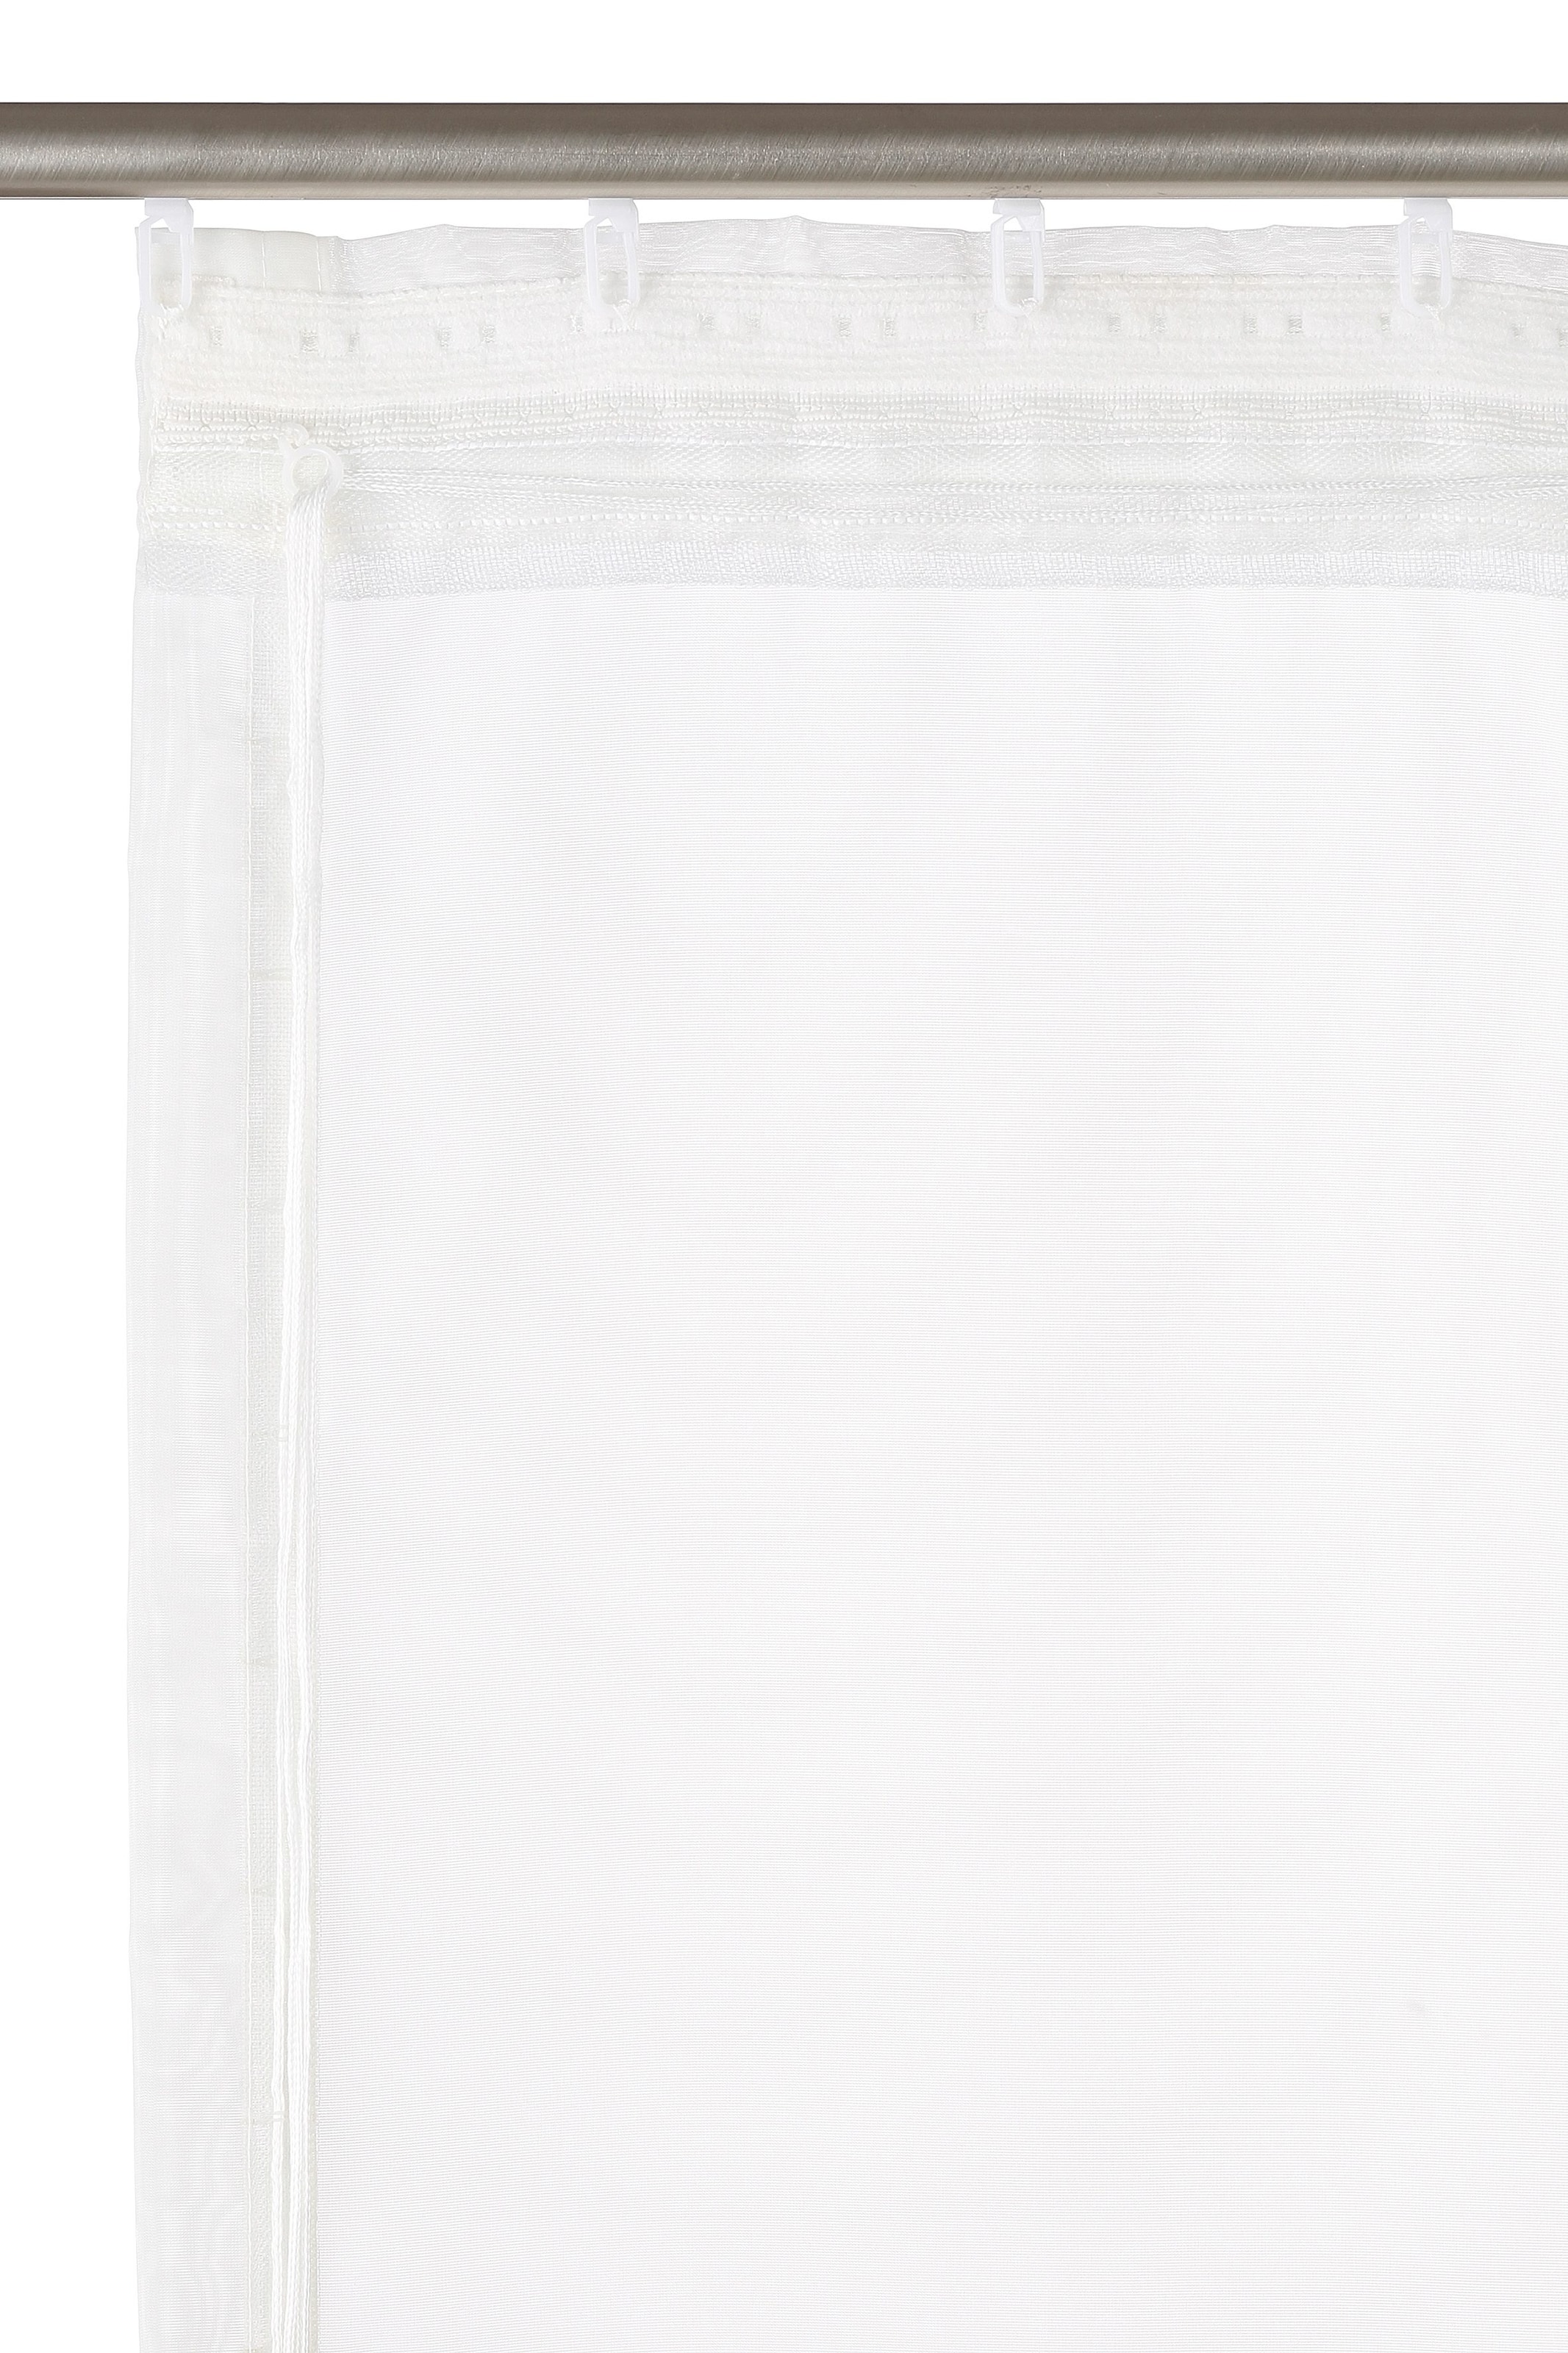 my home Raffrollo Klettband, mit Bestickt, »Sorel«, Polyester Transparent